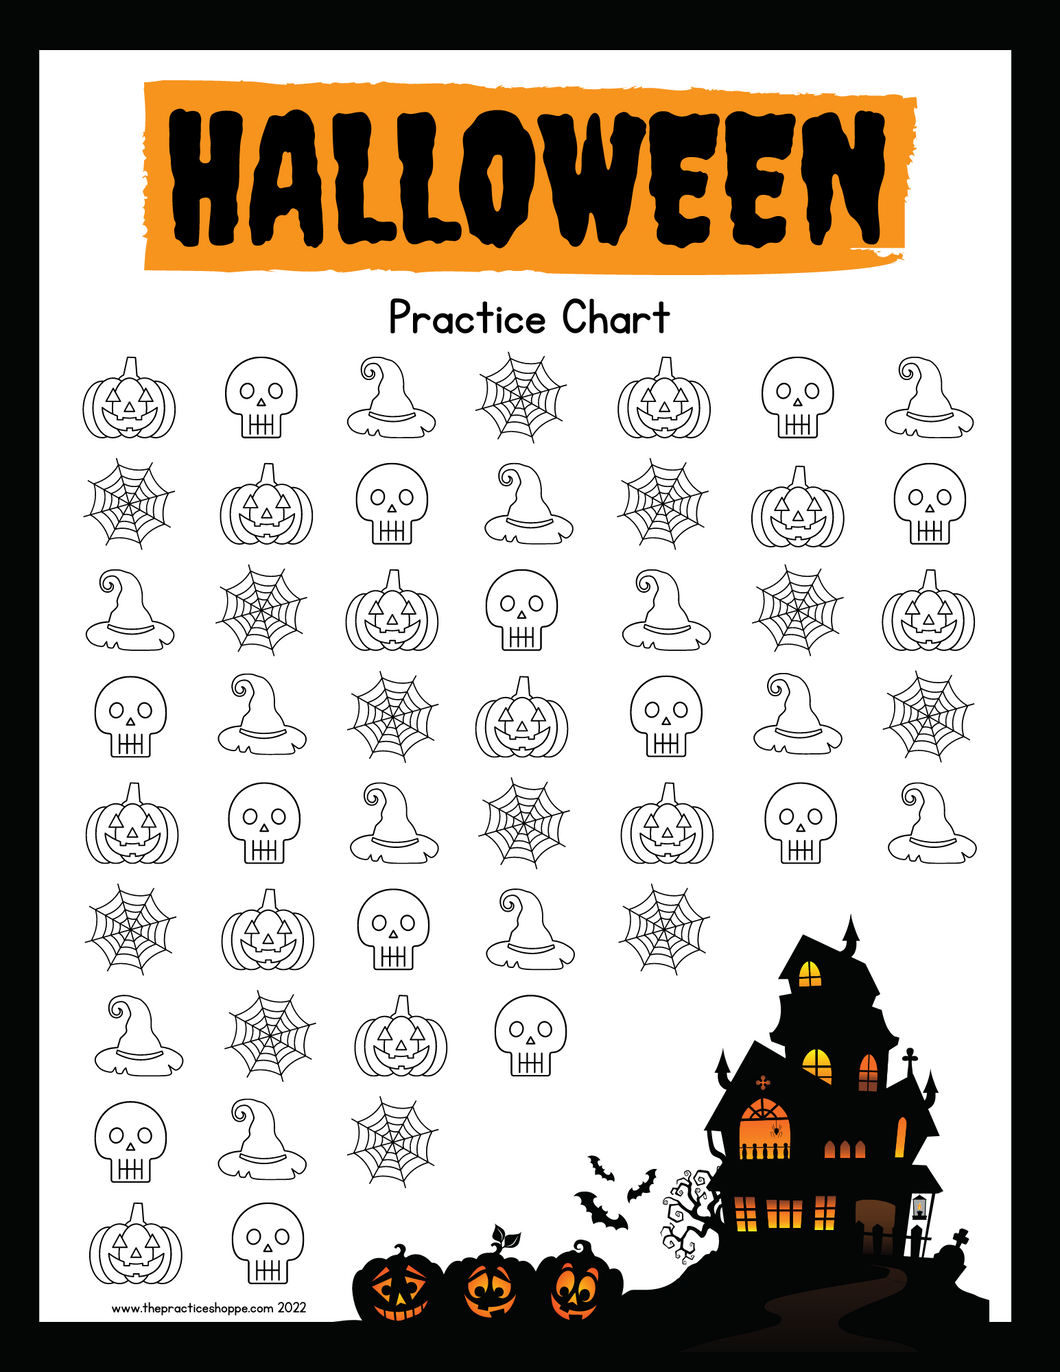 Halloween Practice Chart (digital download)